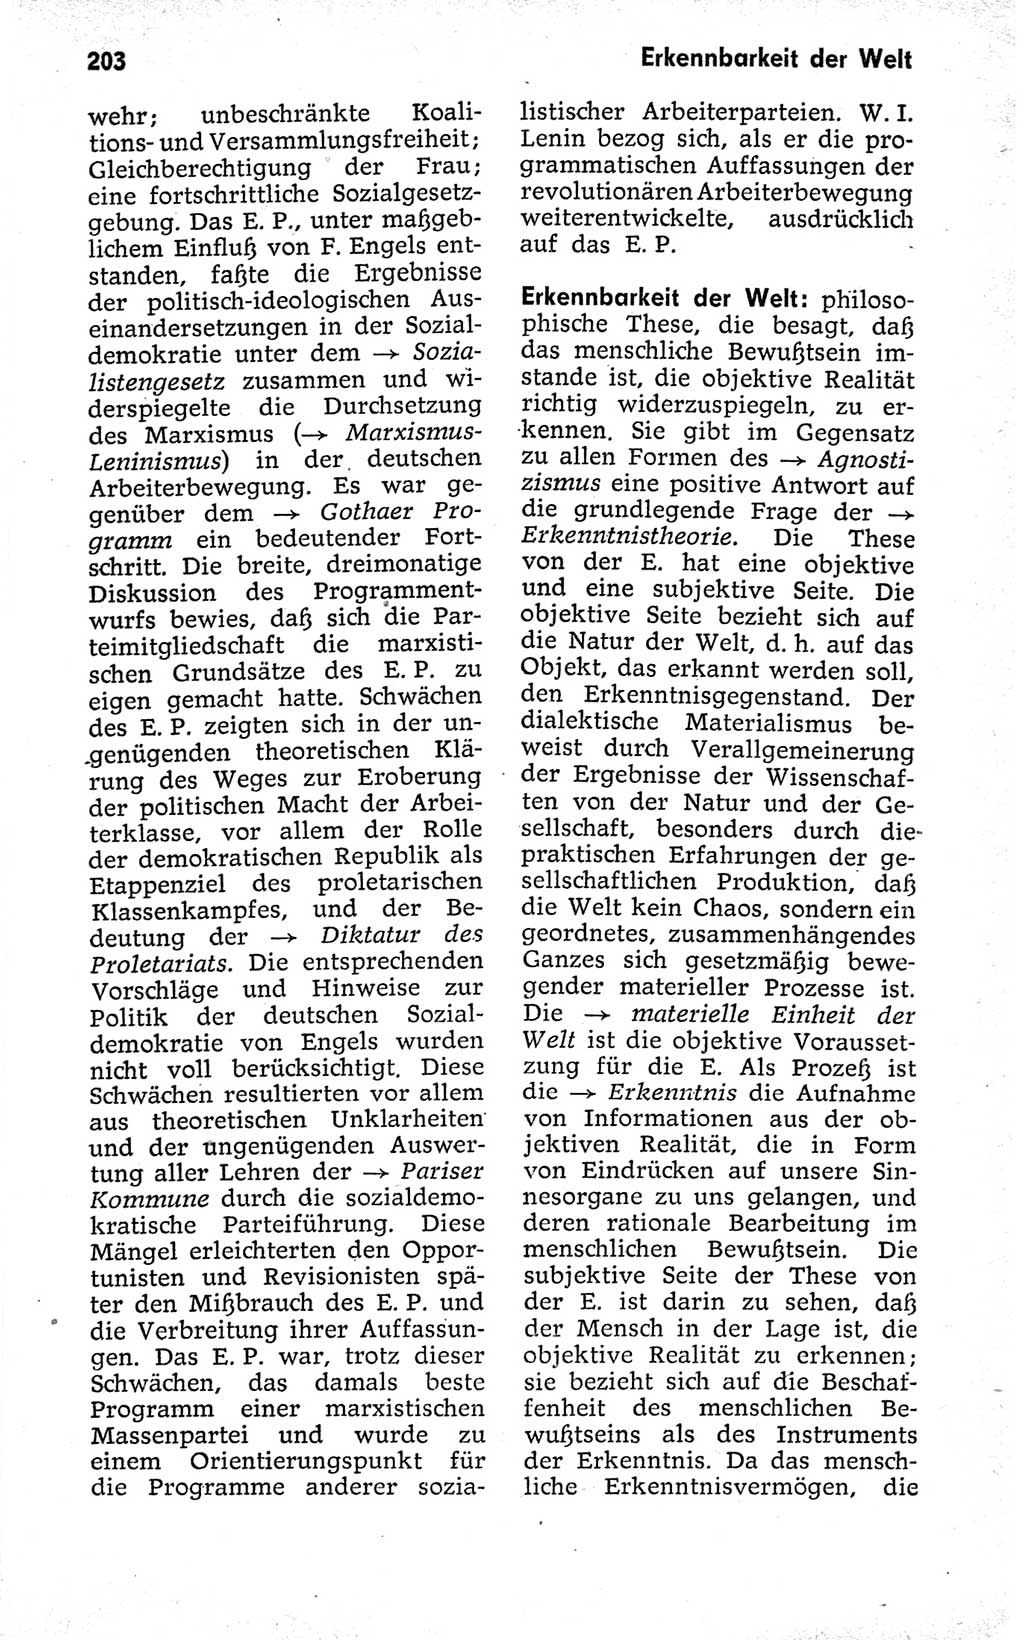 Kleines politisches Wörterbuch [Deutsche Demokratische Republik (DDR)] 1973, Seite 203 (Kl. pol. Wb. DDR 1973, S. 203)